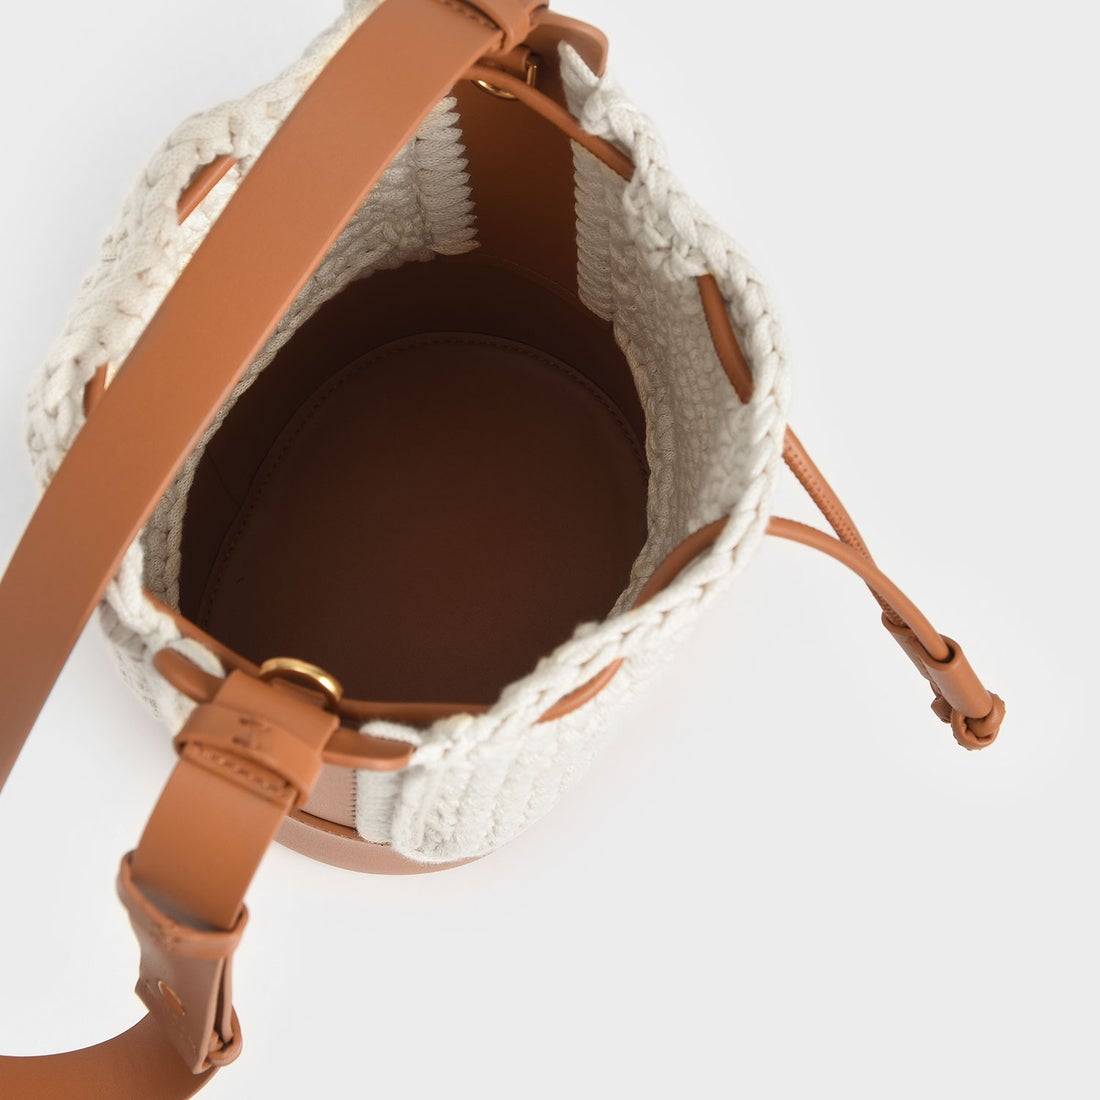 クロシェ ドローストリングバケツバッグ / Crochet Drawstring Bucket Bag （Cognac）